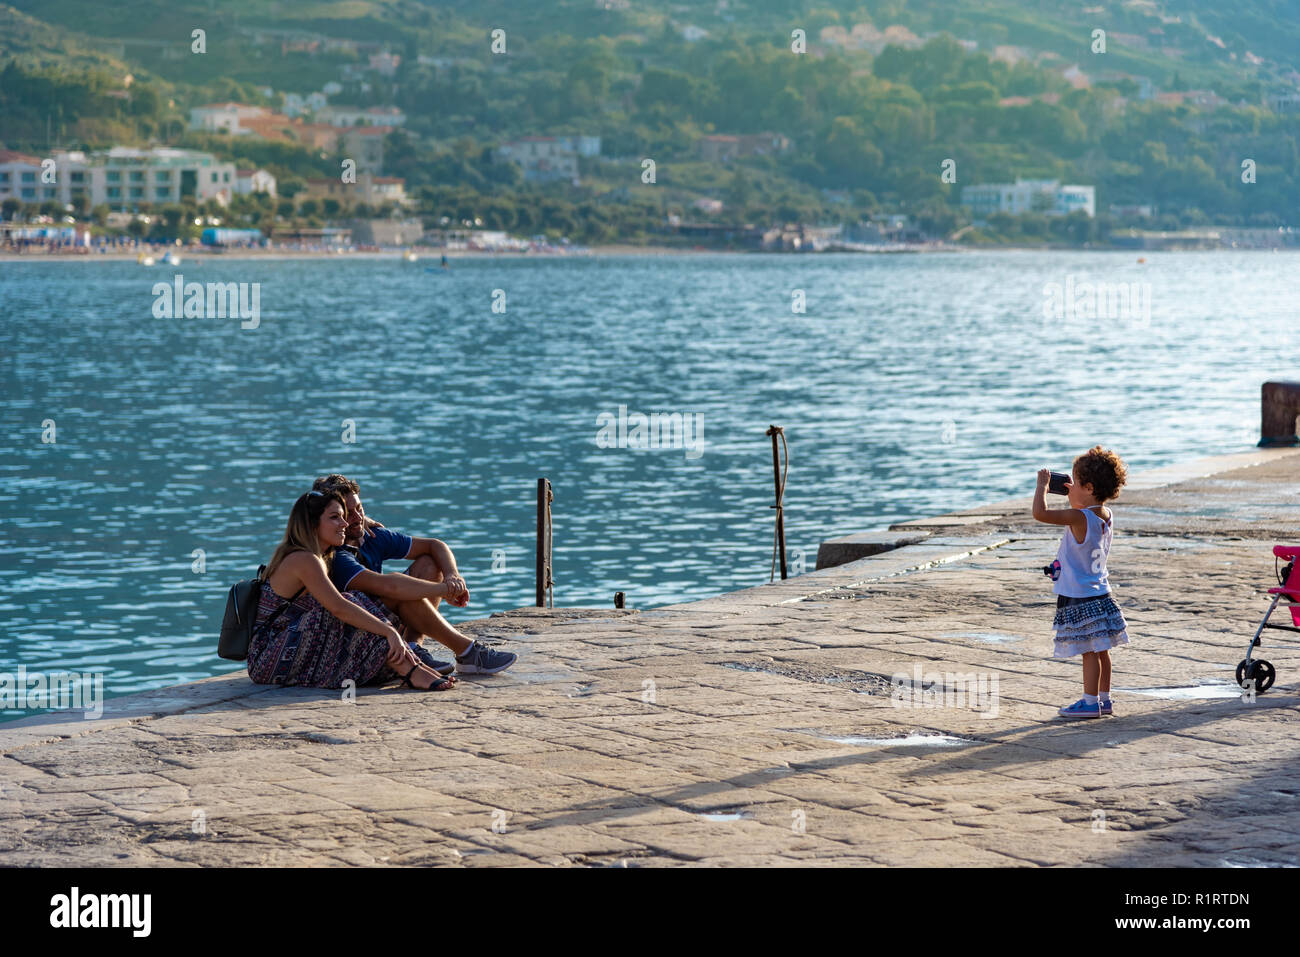 Sicilia, Italia - 14 de agosto de 2018: familia feliz en la playa de la ciudad de Cefalu, tomando fotografías en seaside Foto de stock